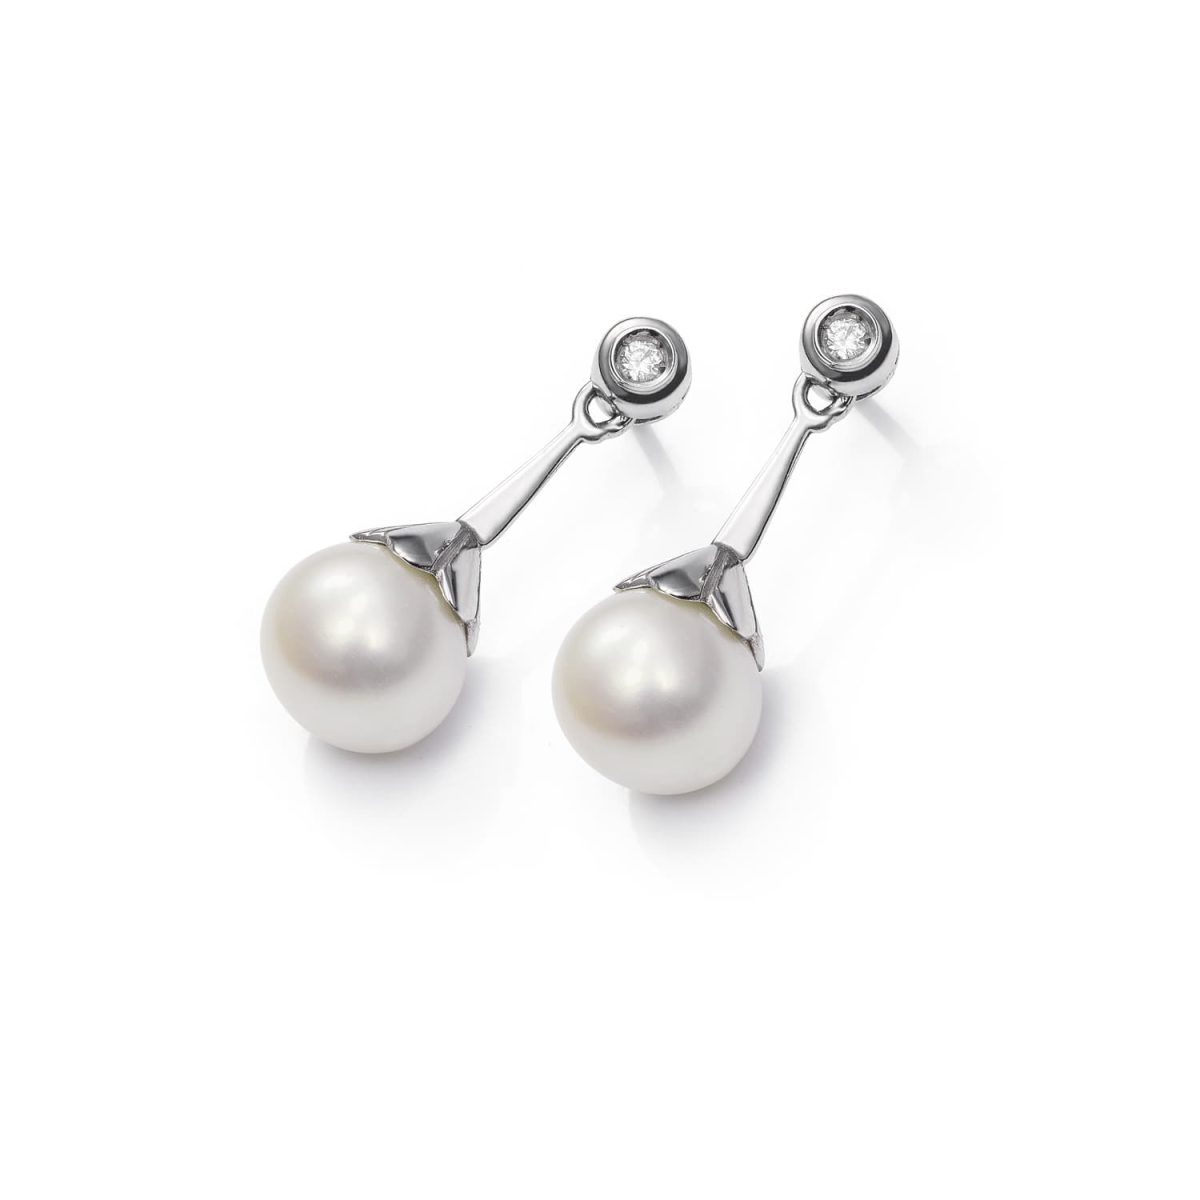 Pendientes Pearl Pendientes de oro blanco de 18K adornados con 0,08ct de diamantes talla brillante y una pareja de perlas cultivadas.